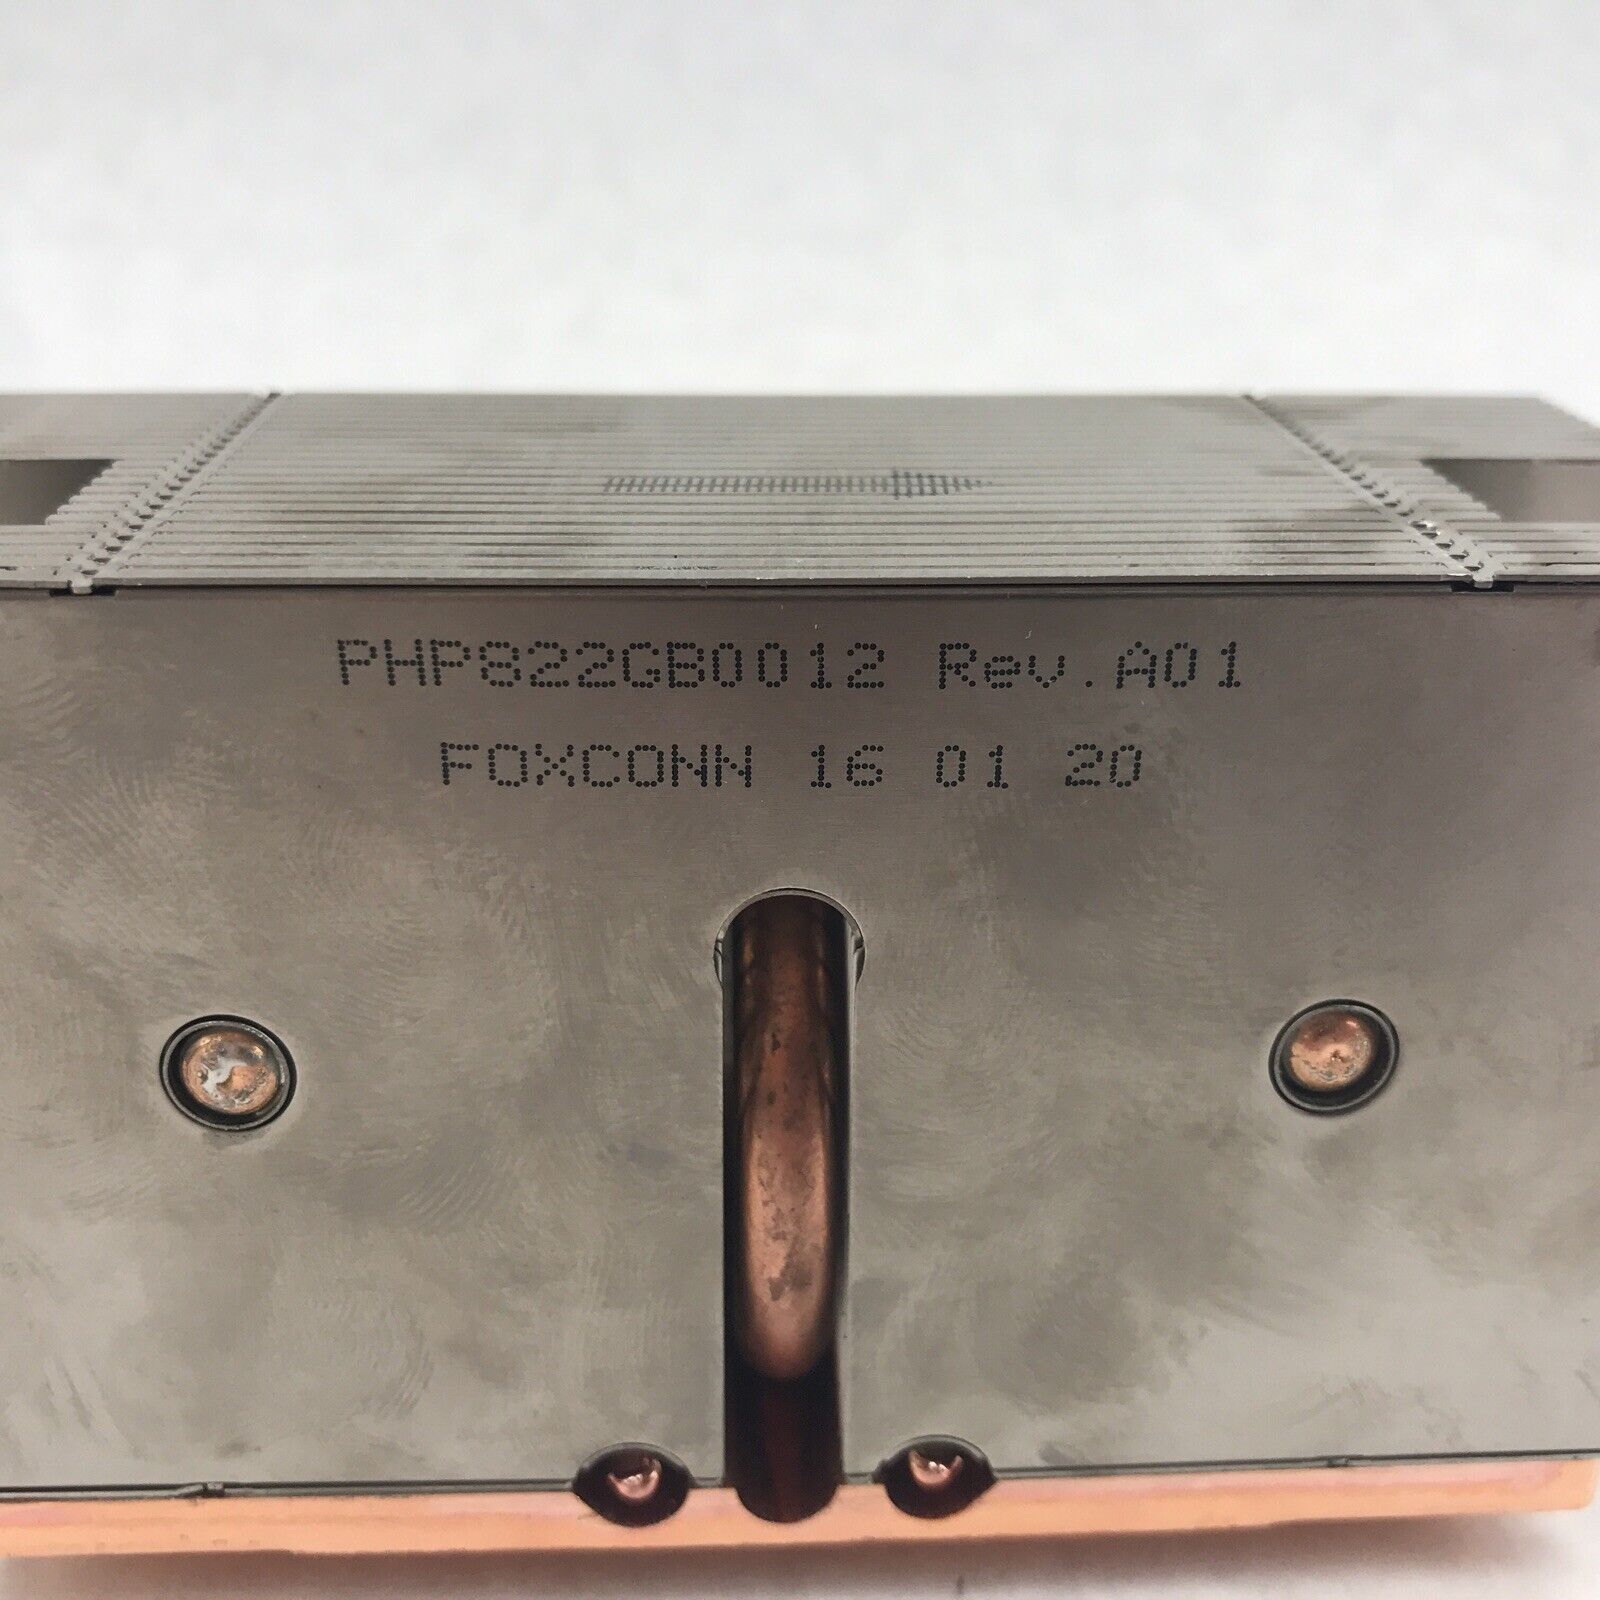 Foxconn PHP822GB0012 EMC Heatsink Storage Controller for DD2200 DD2500